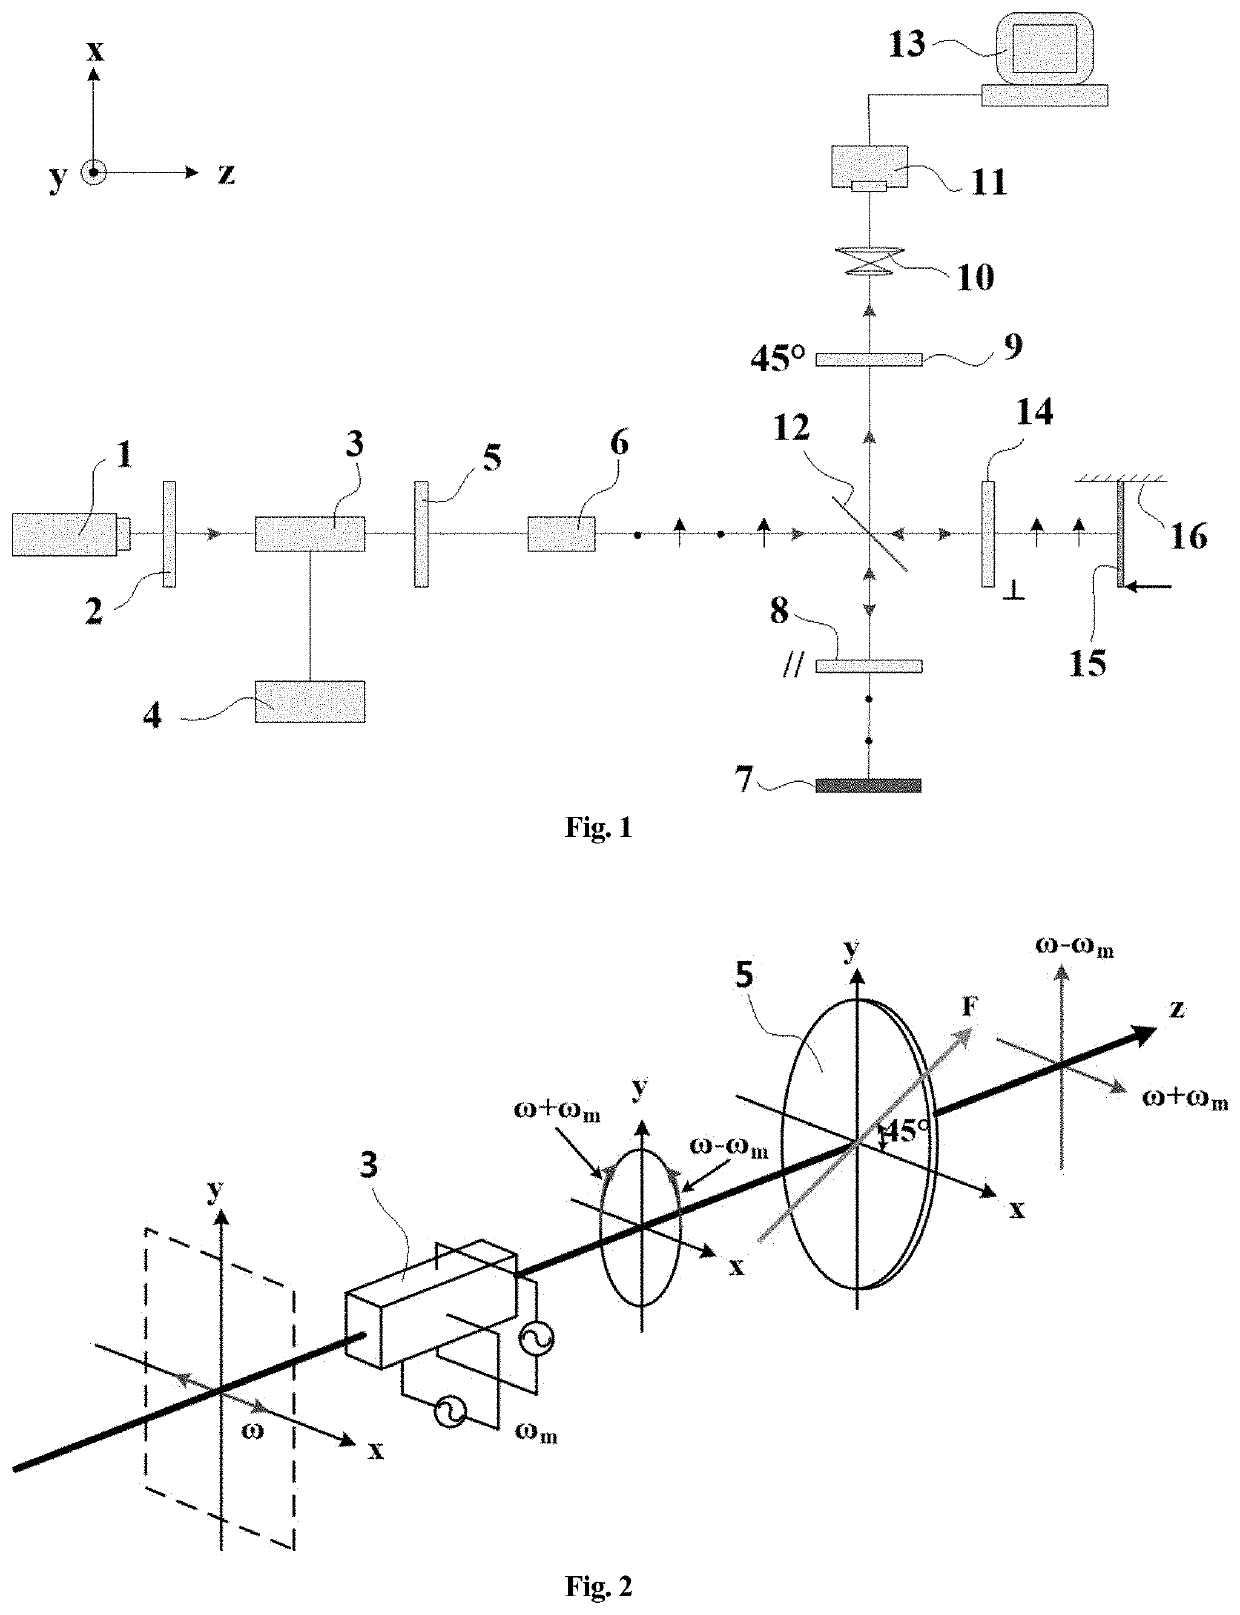 Method for full-field measurement using dynamic laser doppler imaging